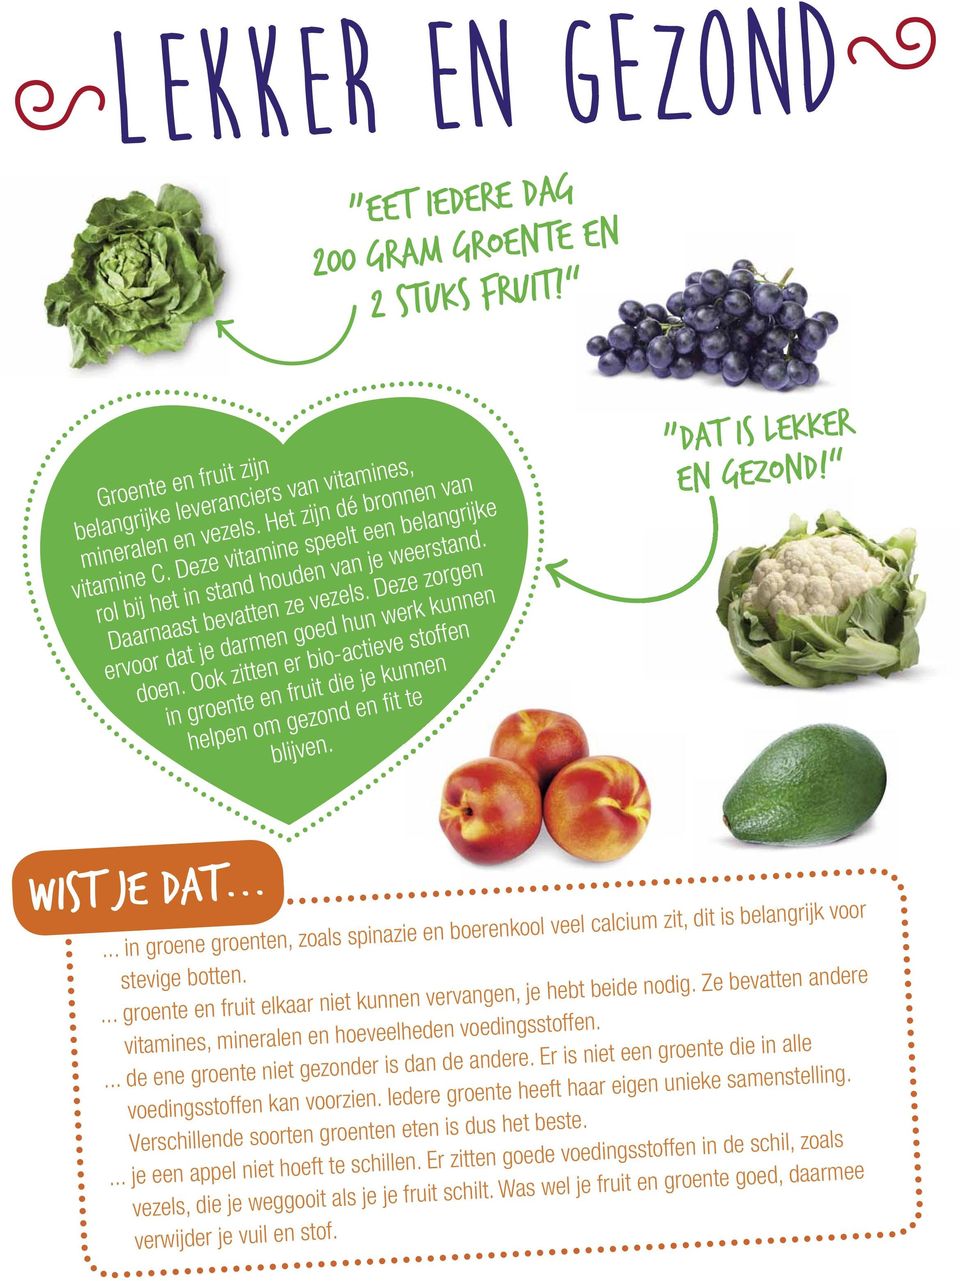 Ook zitten er bio-actieve stoffen in groente en fruit die je kunnen helpen om gezond en fi t te blijven. Dat is lekker en gezond! Wist je dat.